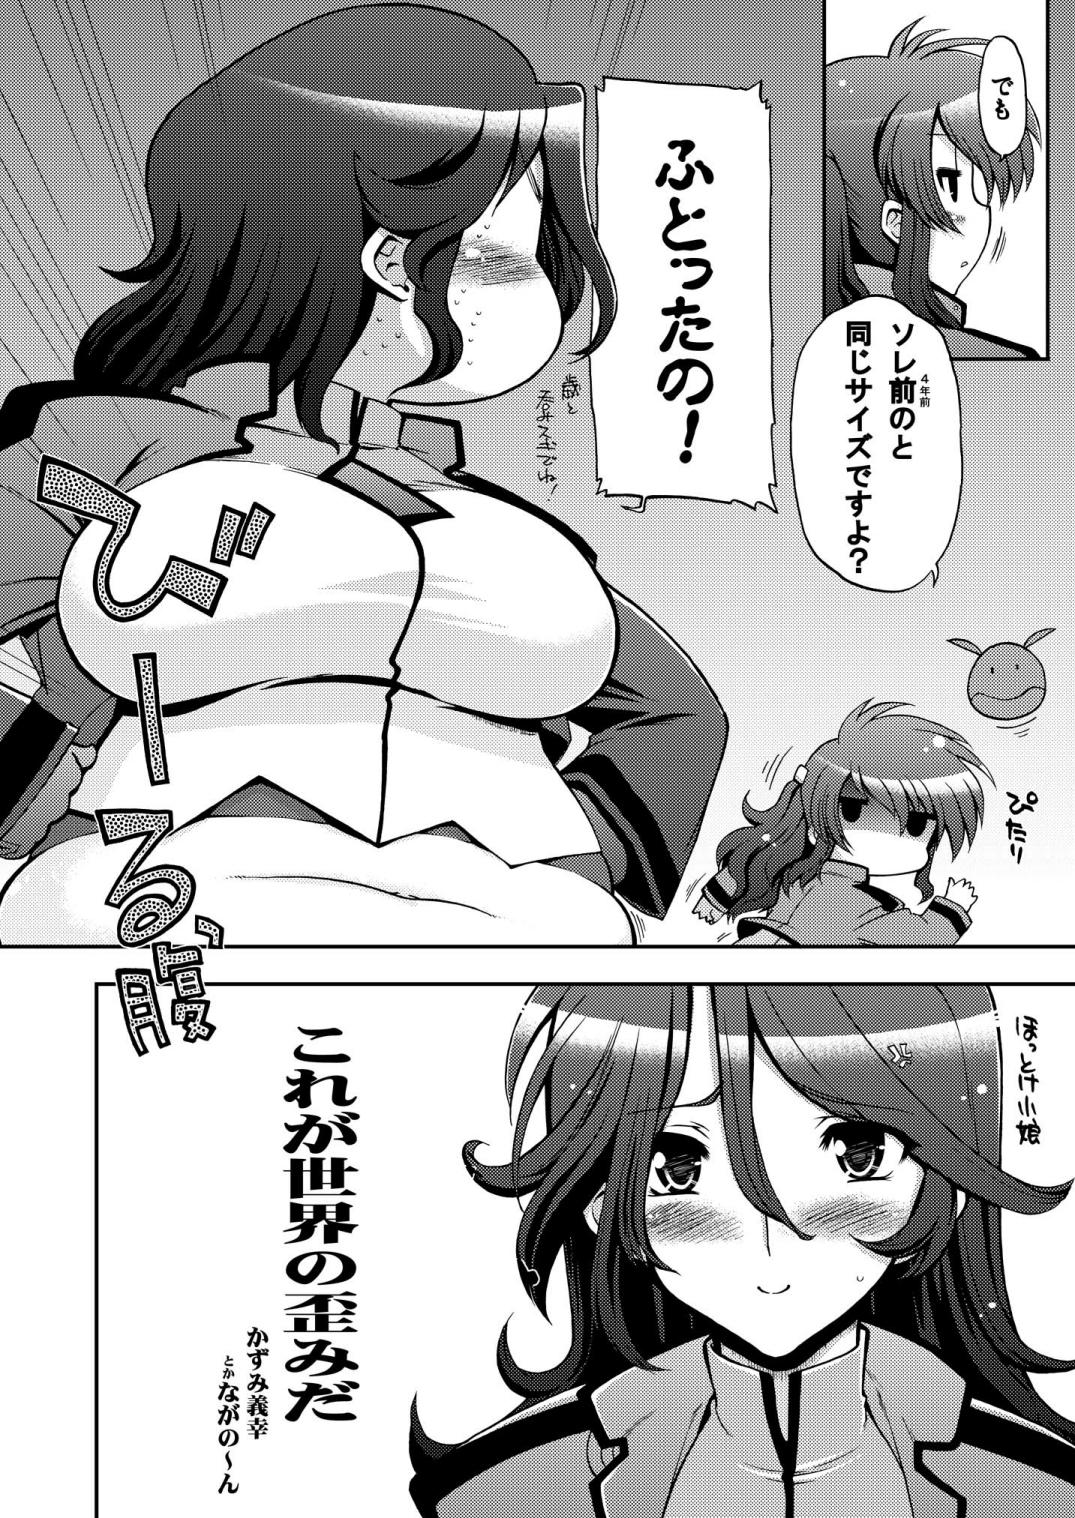 Nudes Korega Sekai no Hizumida - Gundam 00 Couples - Page 5